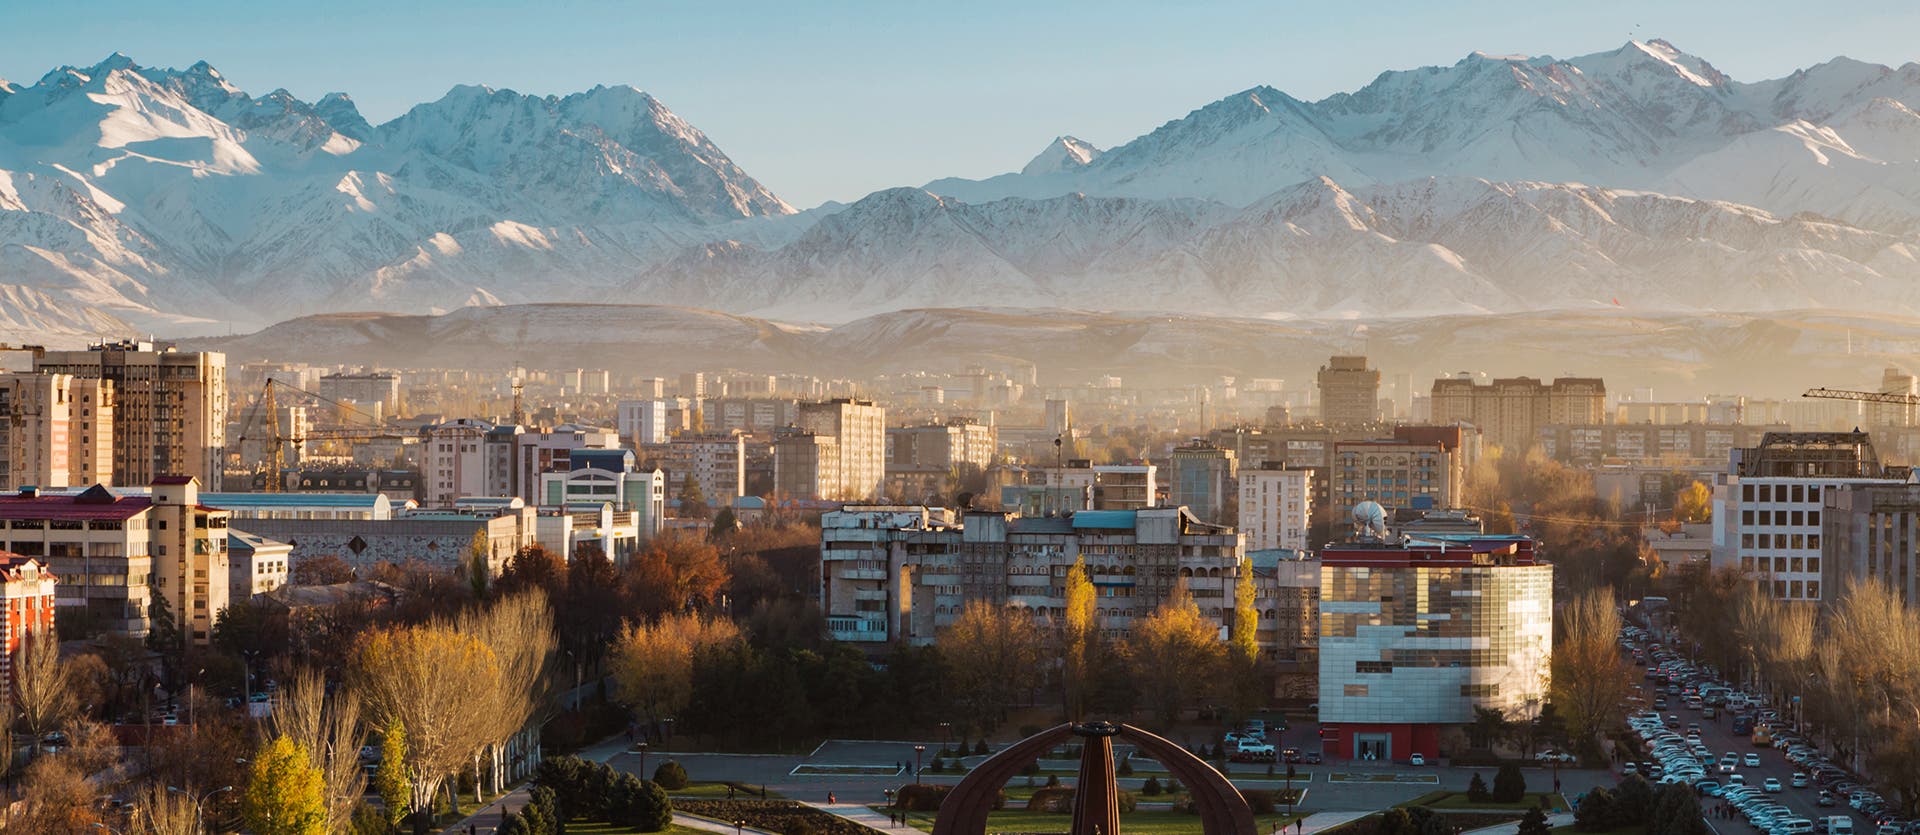 What to see in Kyrgyzstan Bishkek